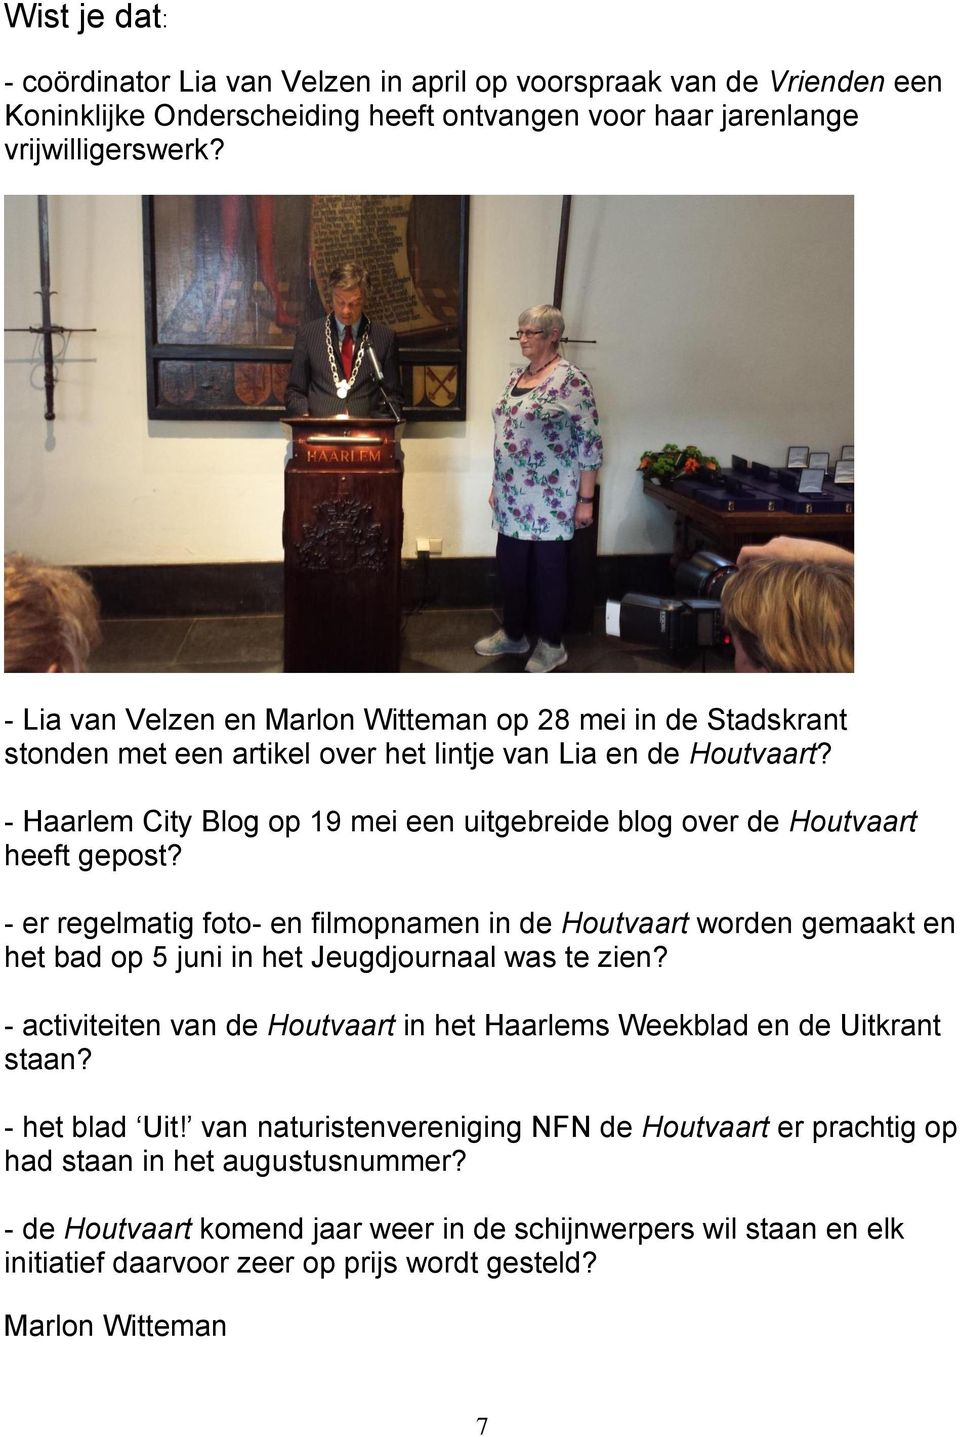 - Haarlem City Blog op 19 mei een uitgebreide blog over de Houtvaart heeft gepost?